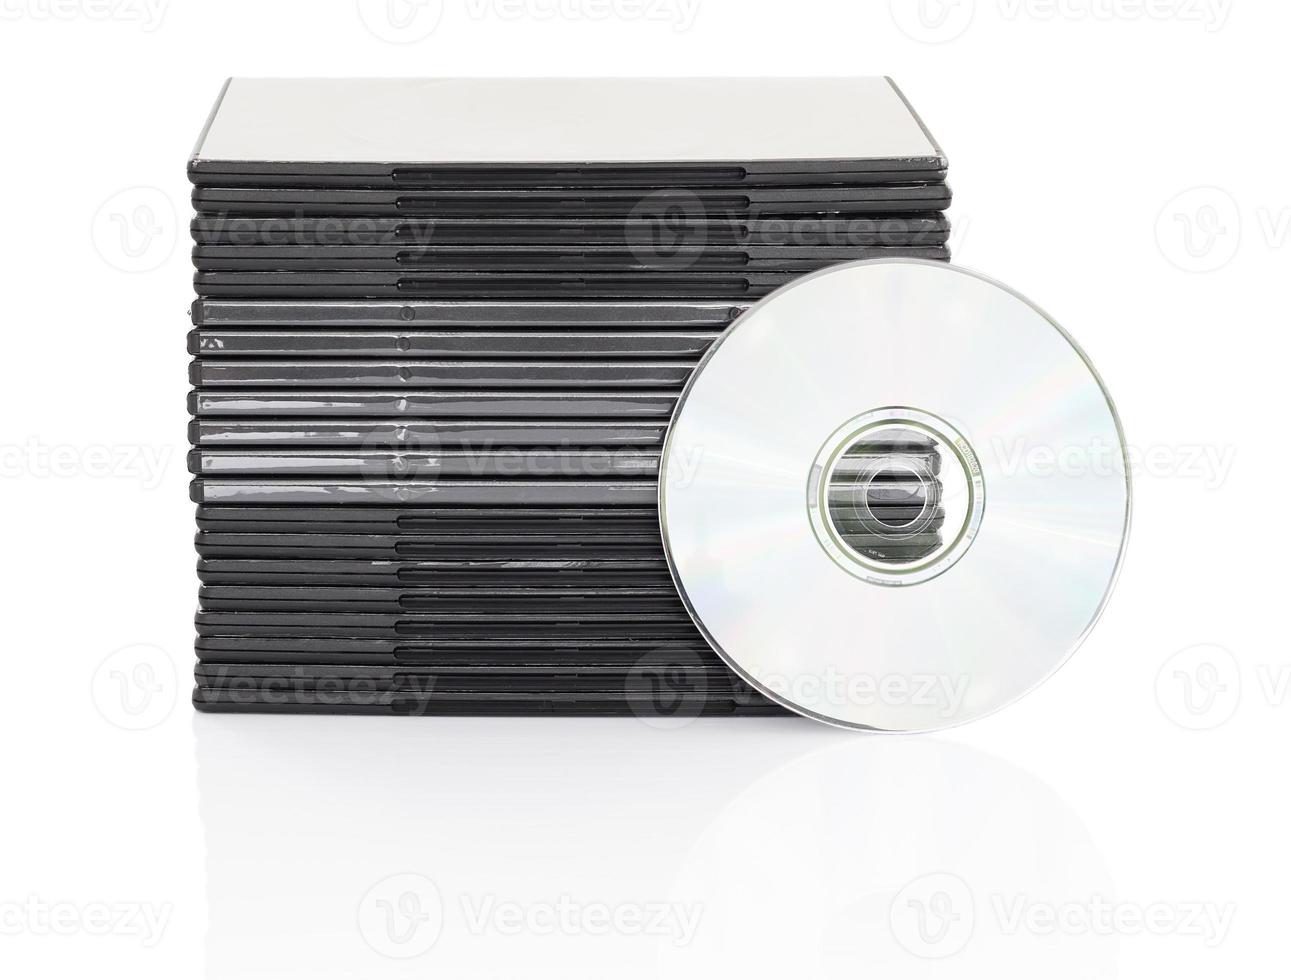 DVD-Box mit Disc auf weißem Hintergrund foto